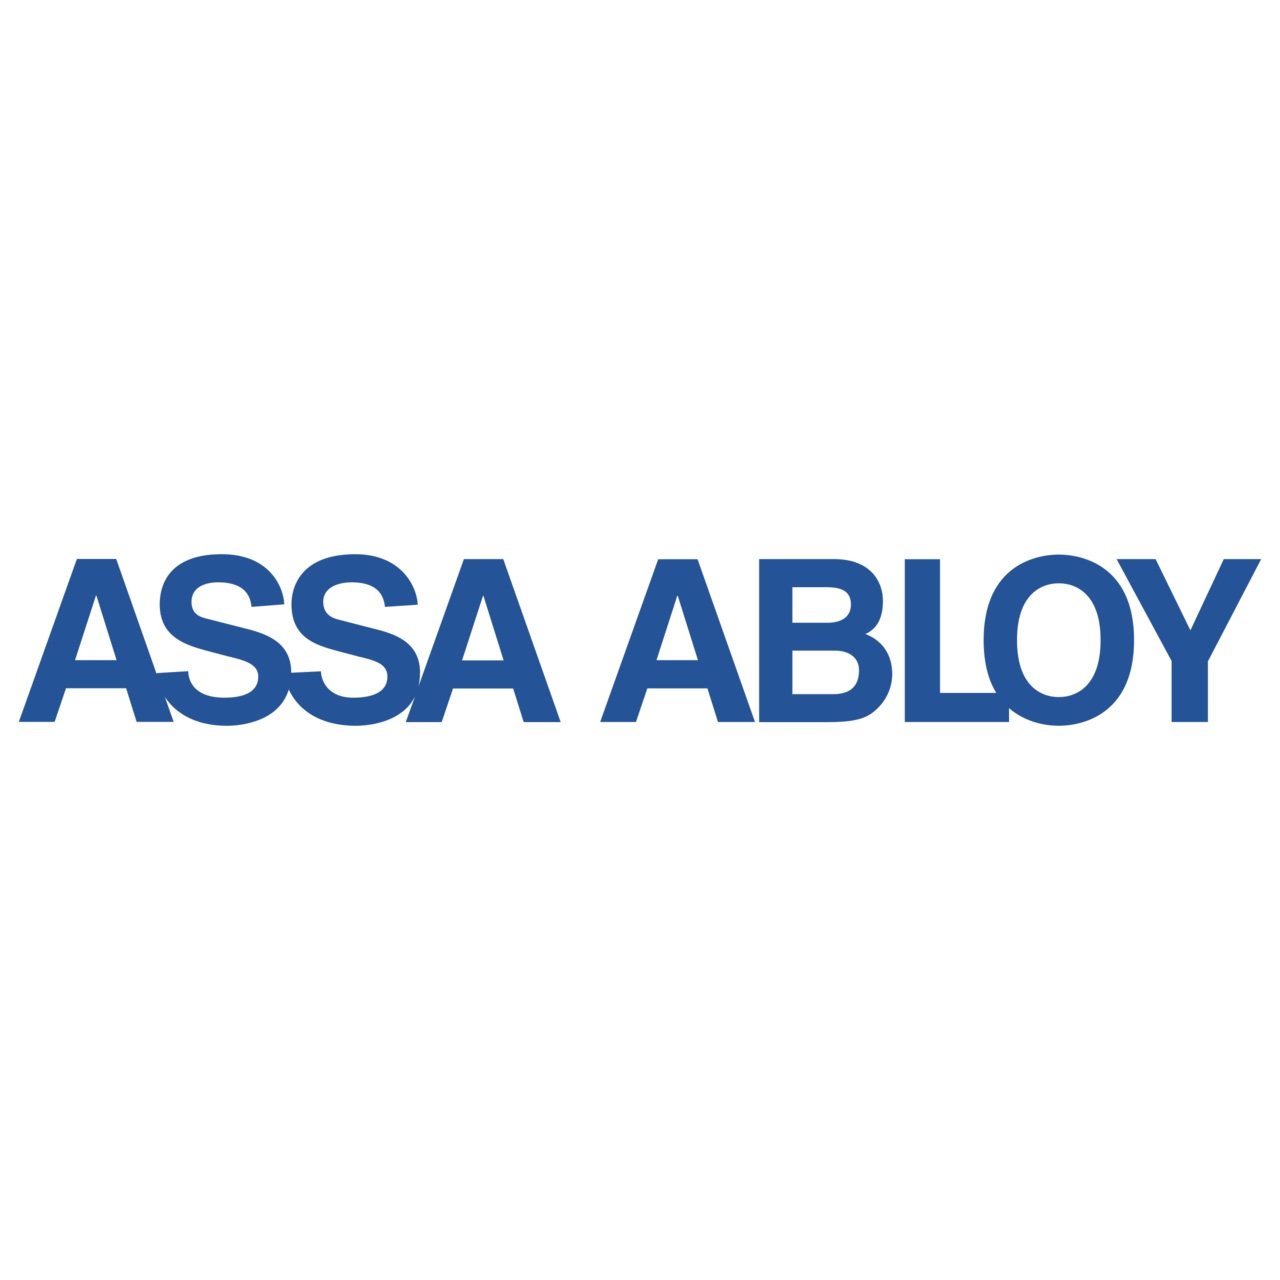 assa-abloy-logo+%281%29.jpg